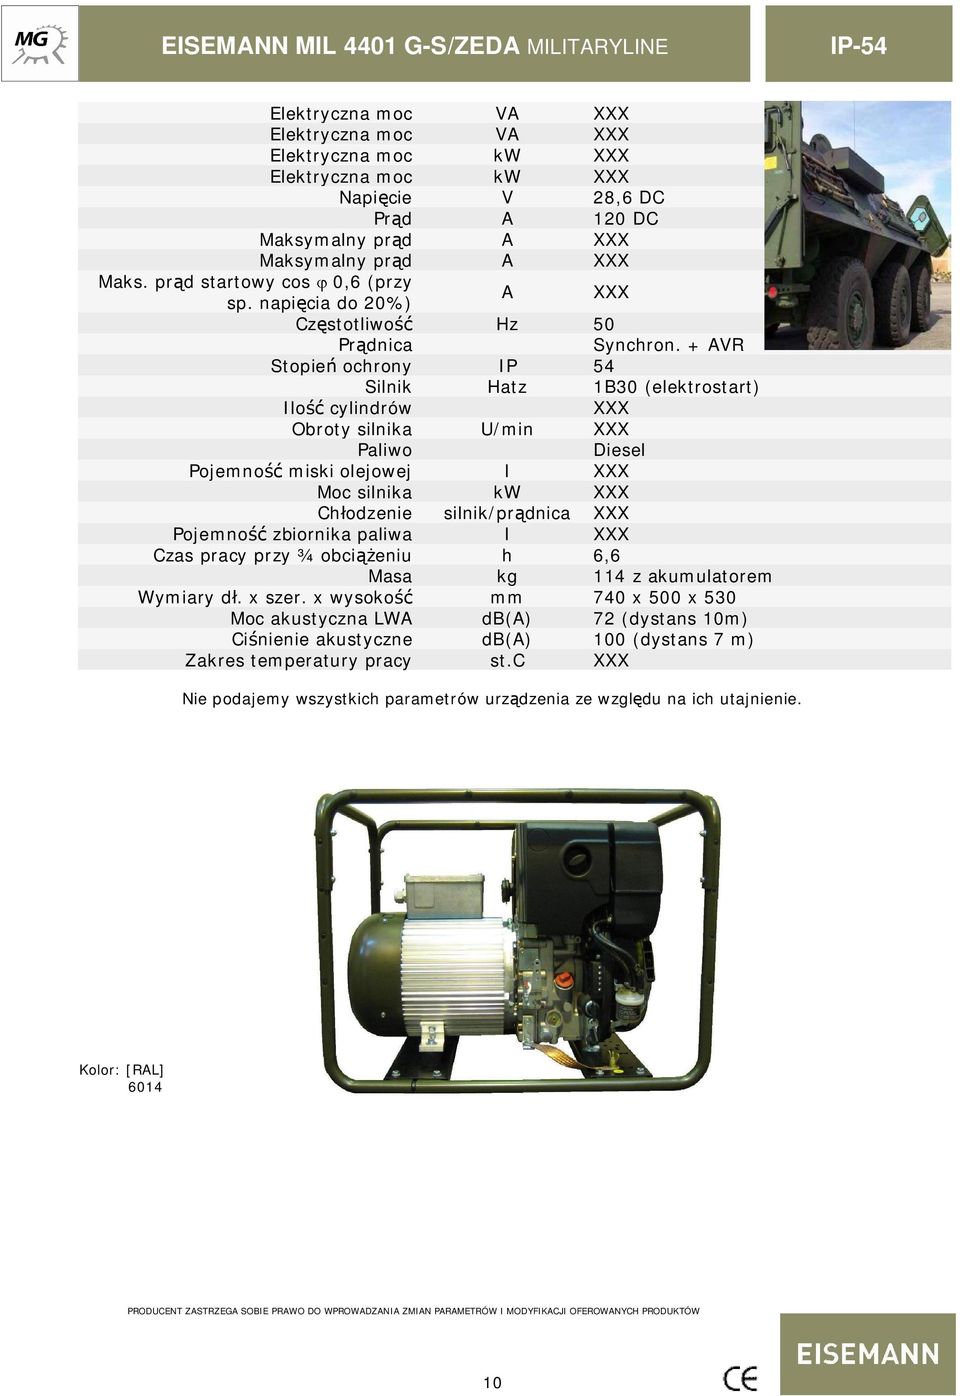 + AVR Stopie ochrony IP 54 Silnik Hatz 1B30 (elektrostart) Ilo cylindrów Obroty silnika U/min Paliwo Diesel Pojemno miski olejowej l Moc silnika kw Ch odzenie silnik/pr dnica Pojemno zbiornika paliwa